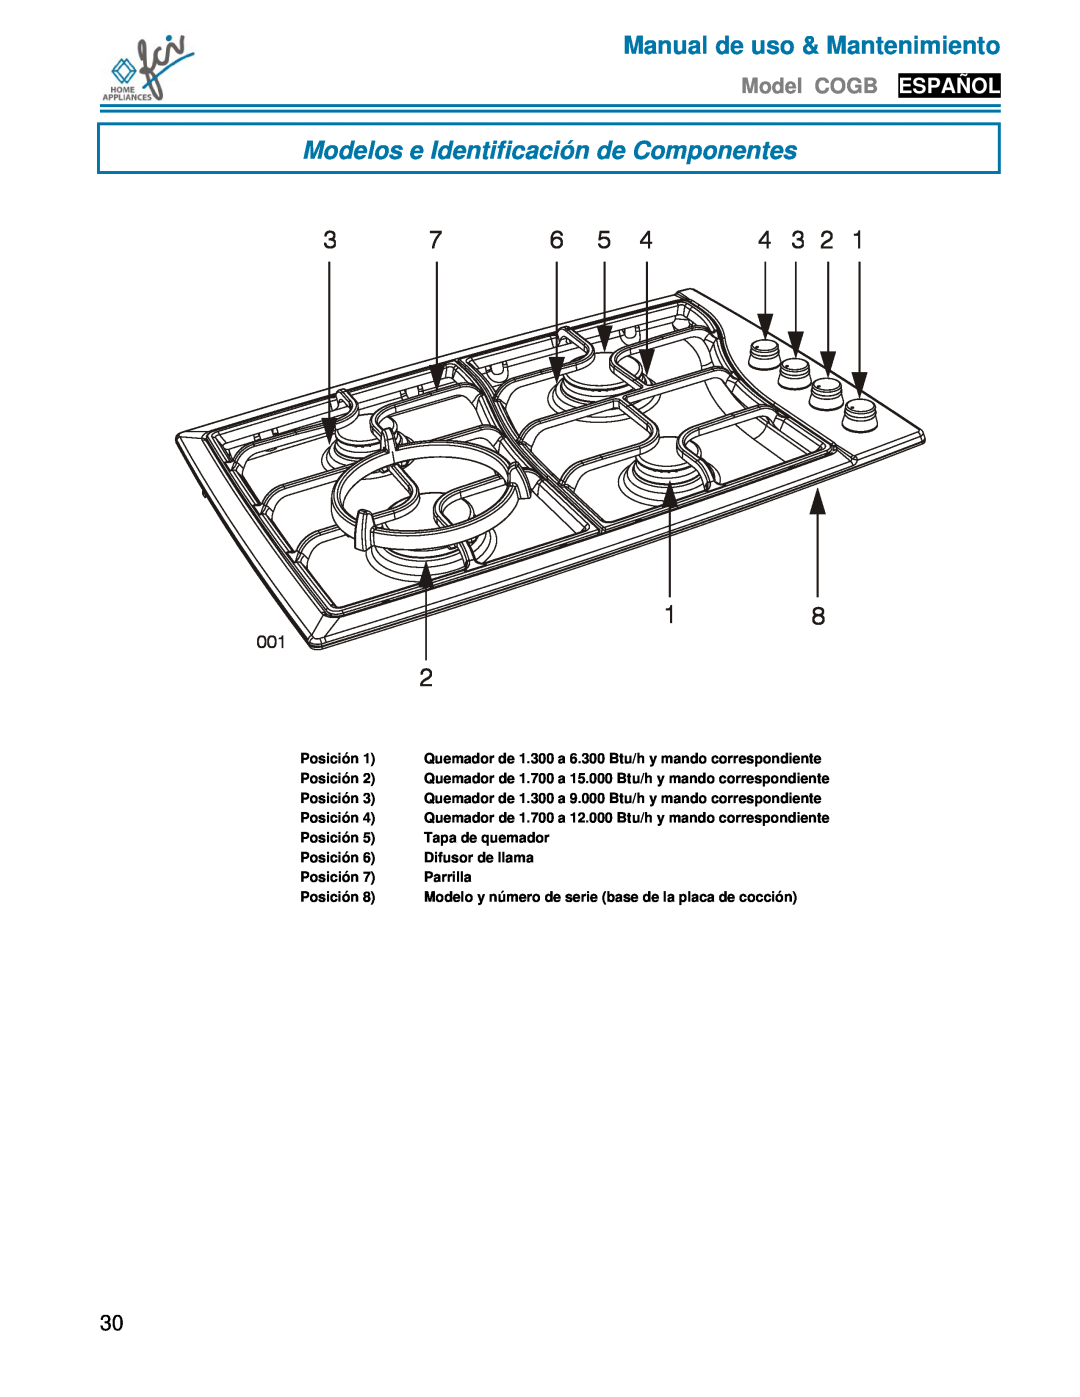 FCI Home Appliances COGB33062 Modelos e Identificación de Componentes, Manual de uso & Mantenimiento, Model COGB ESPAÑOL 